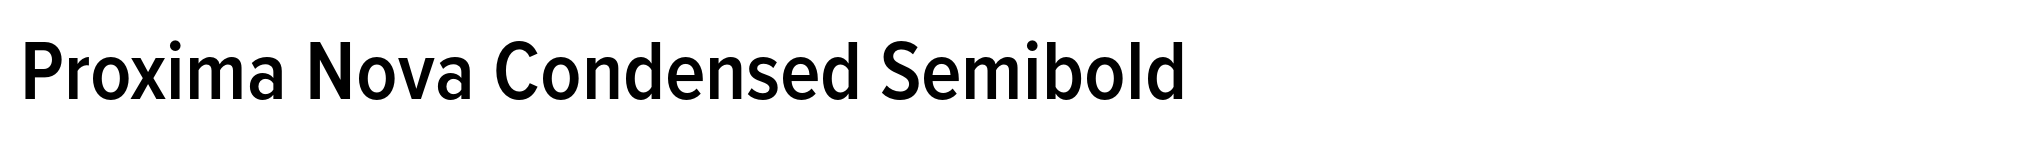 Proxima Nova Condensed Semibold image